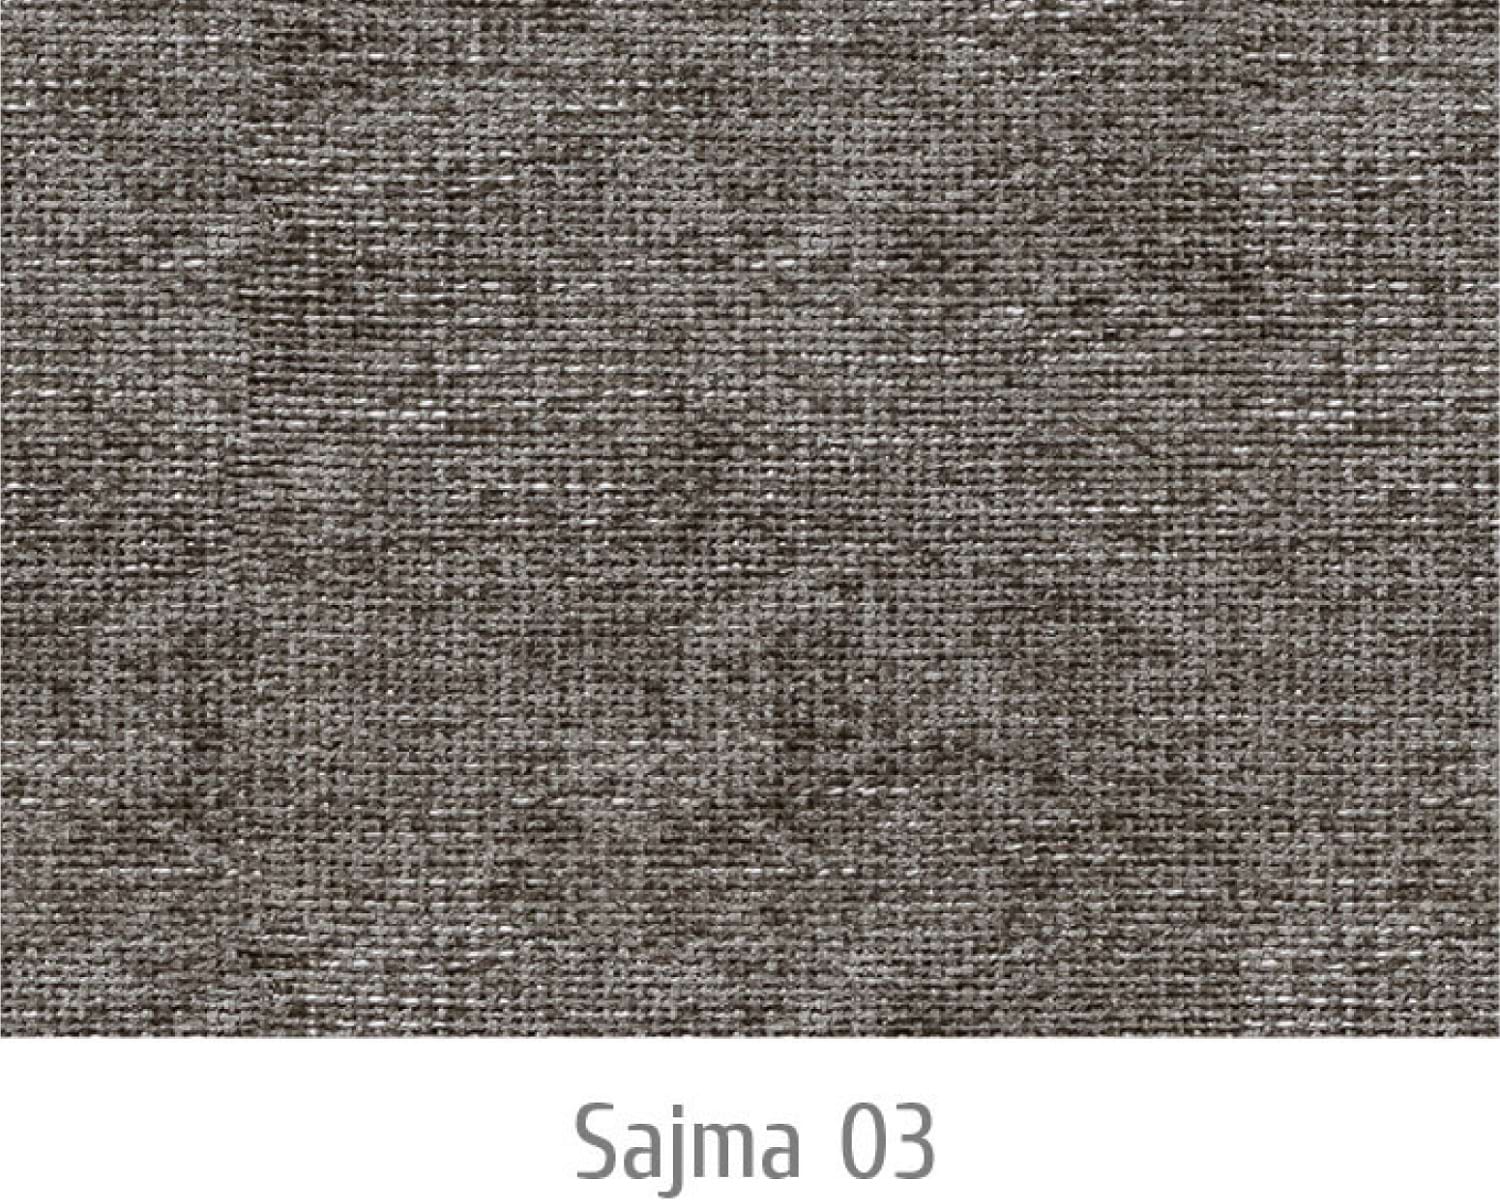 Sajma03